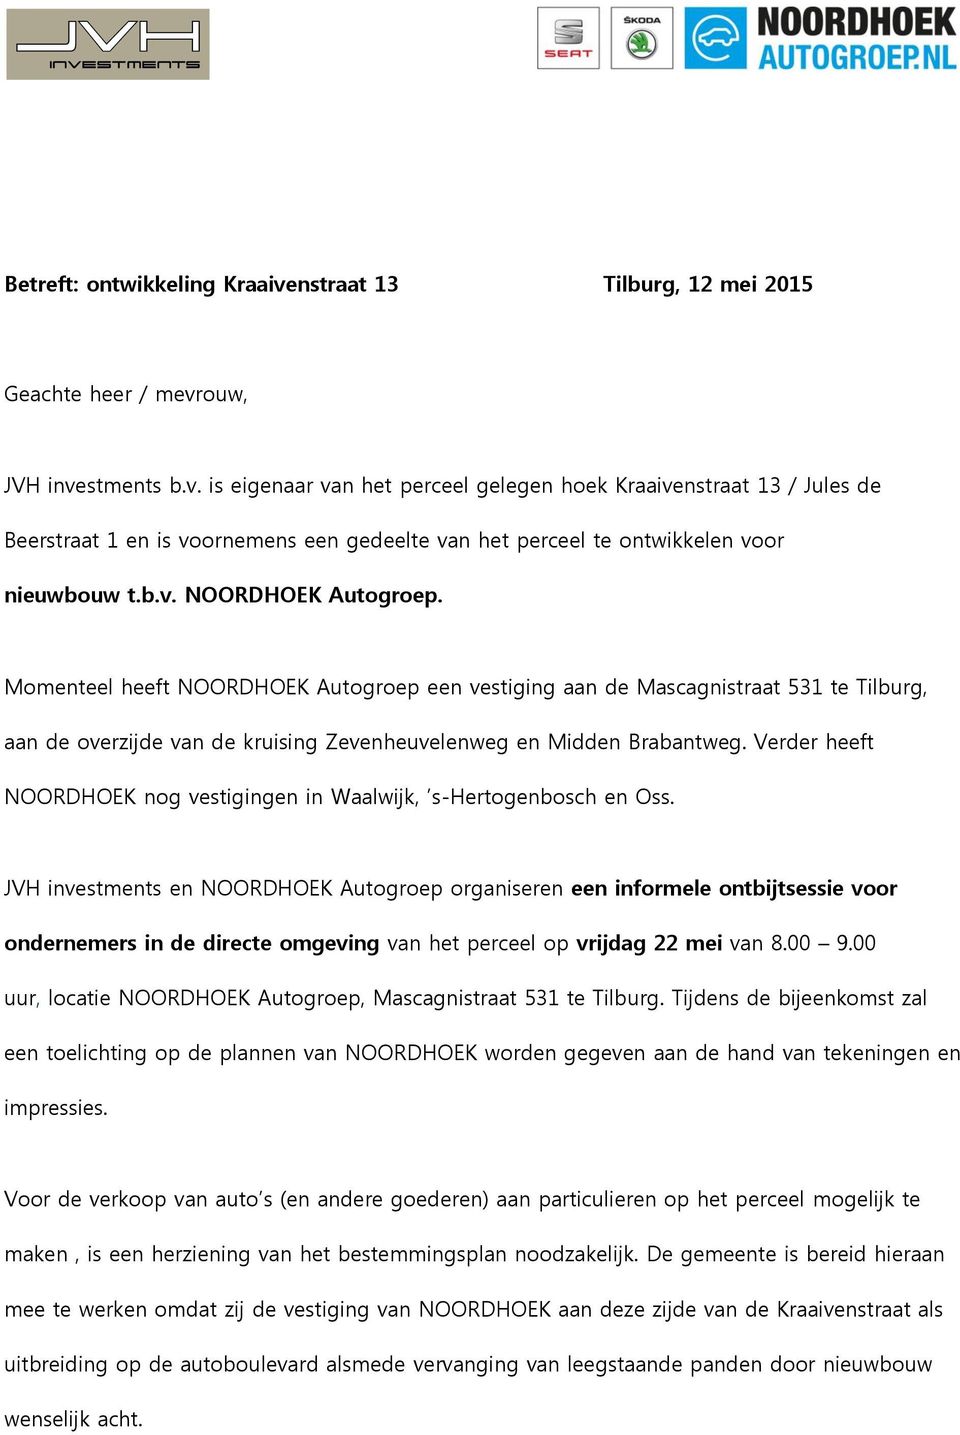 Verder heeft NOORDHOEK nog vestigingen in Waalwijk, s-hertogenbosch en Oss.